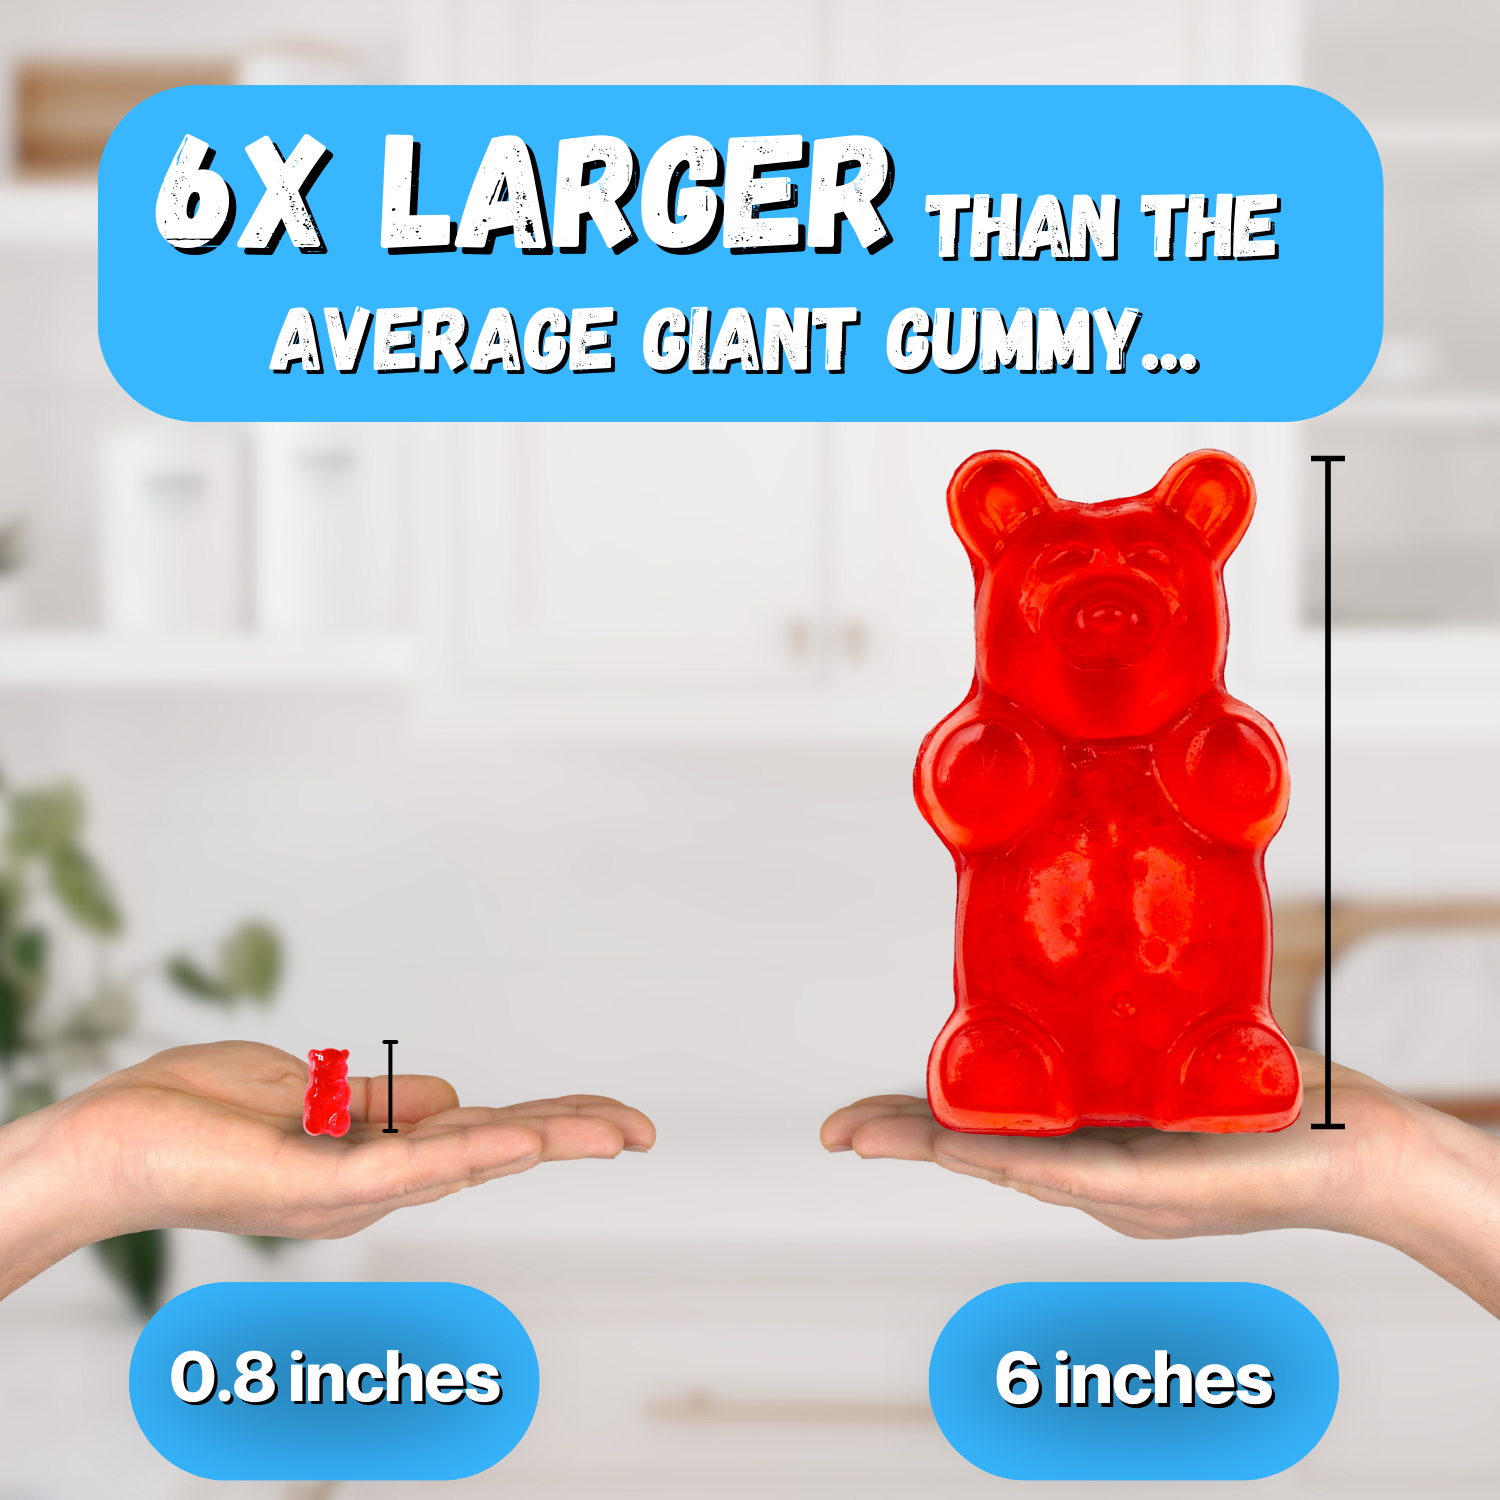 Giant Gummy Breakfast - 5oz